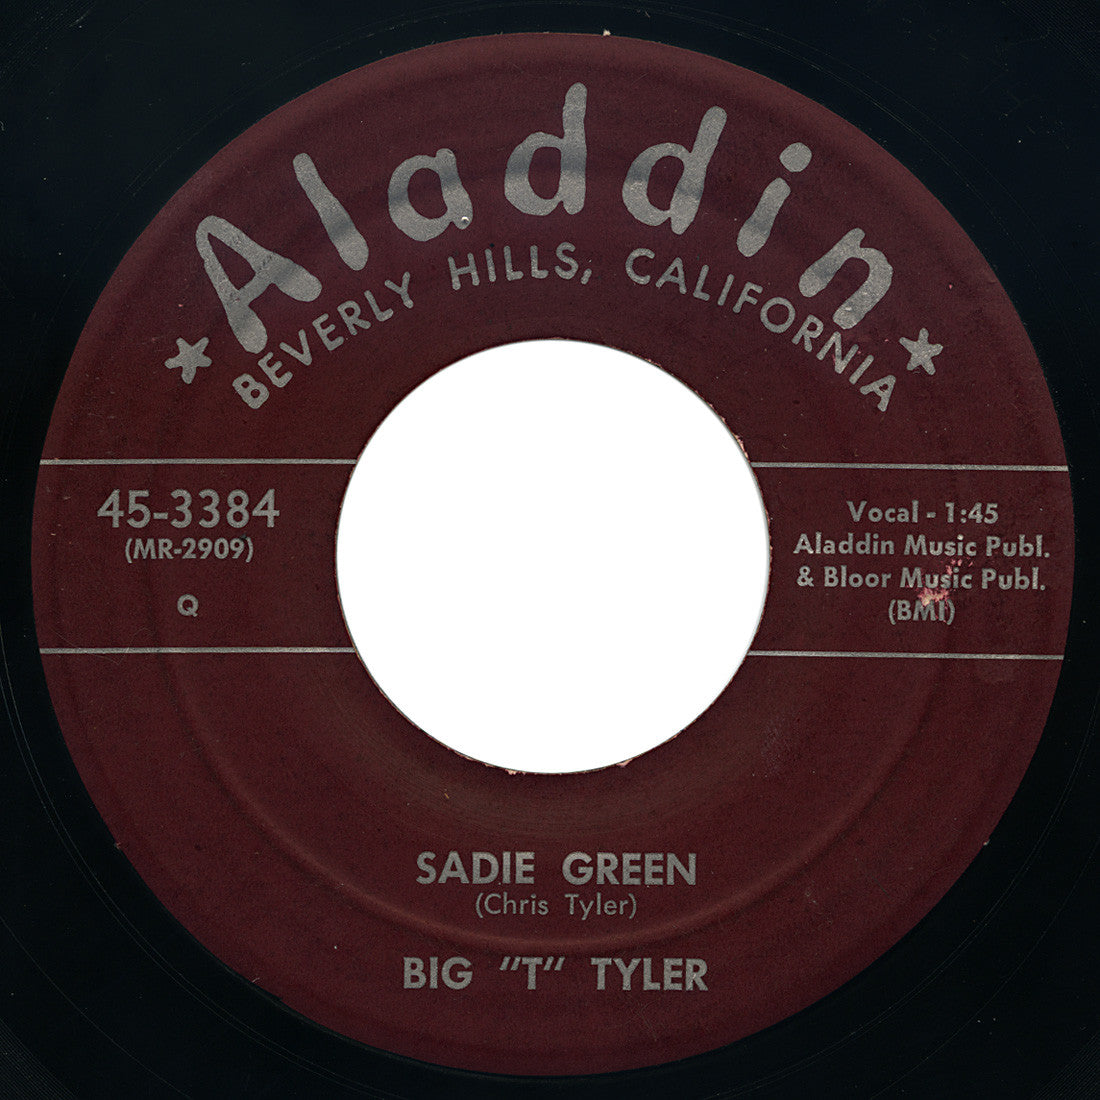 Big “T” Tyler – King Kong / Sadie Green – Aladdin